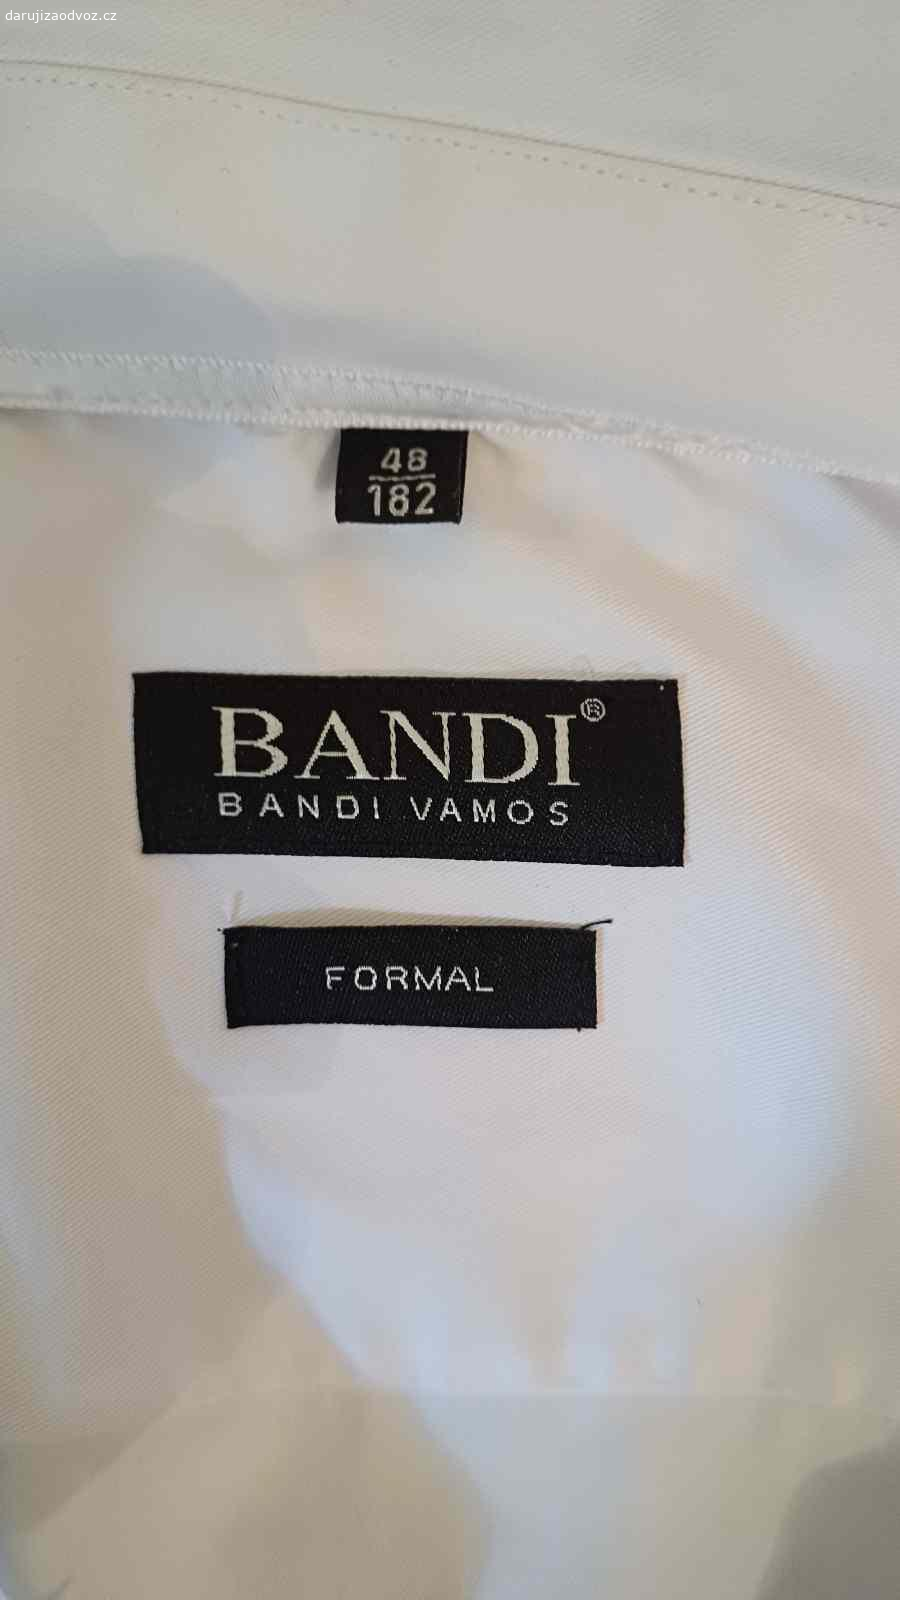 Košile BANDI. bílá společenská košile vel. 48